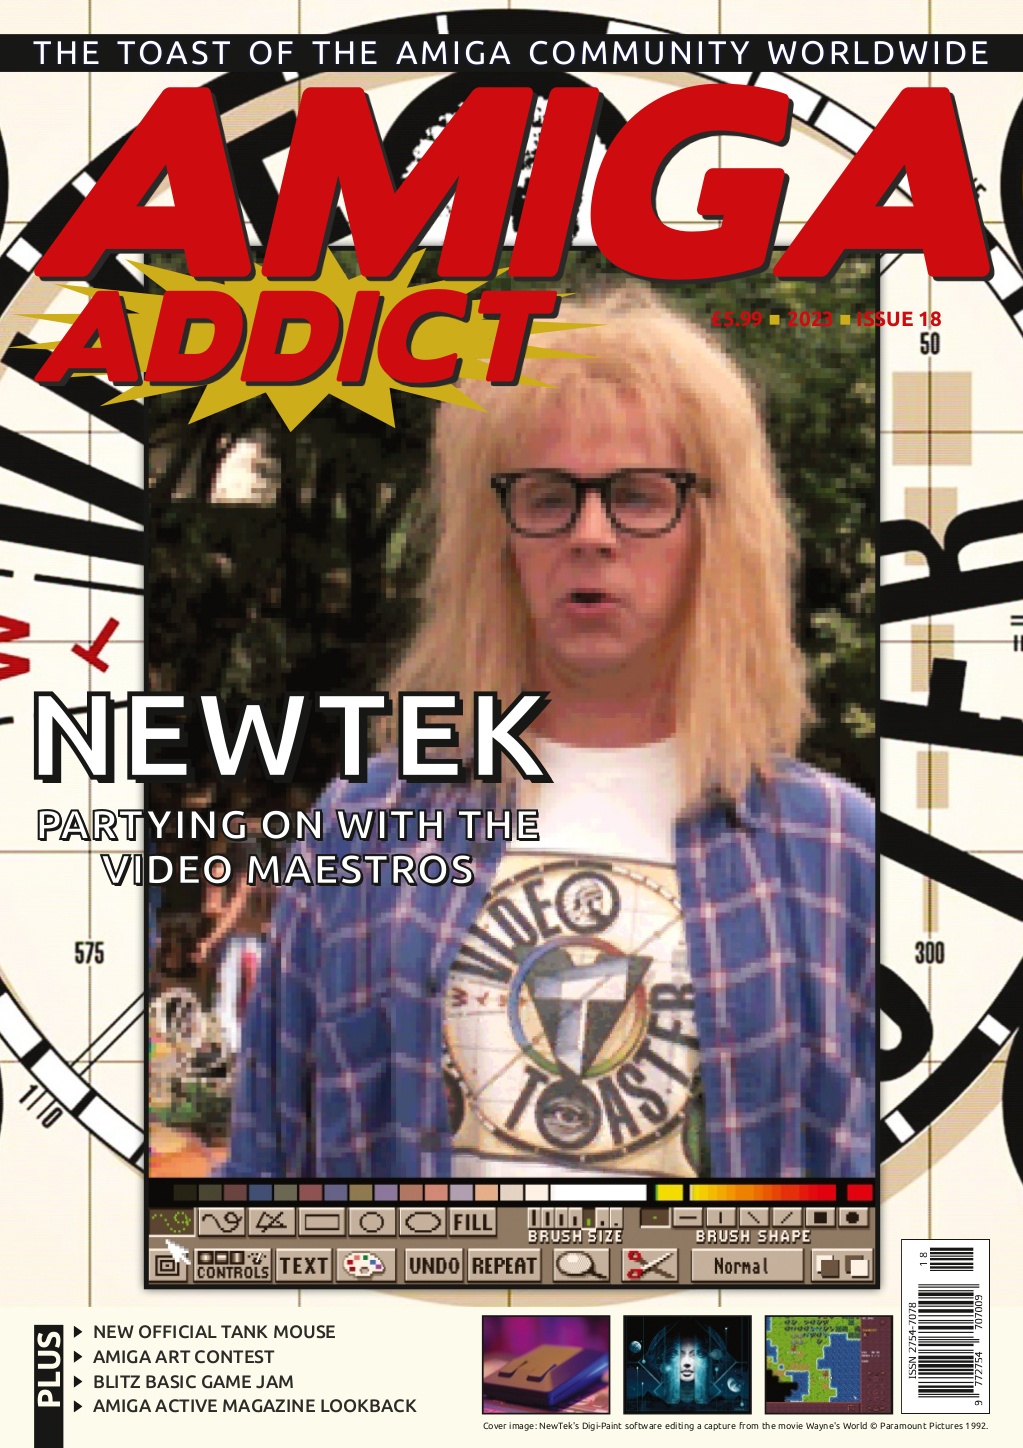 Issue 15 Amiga Addict magazine